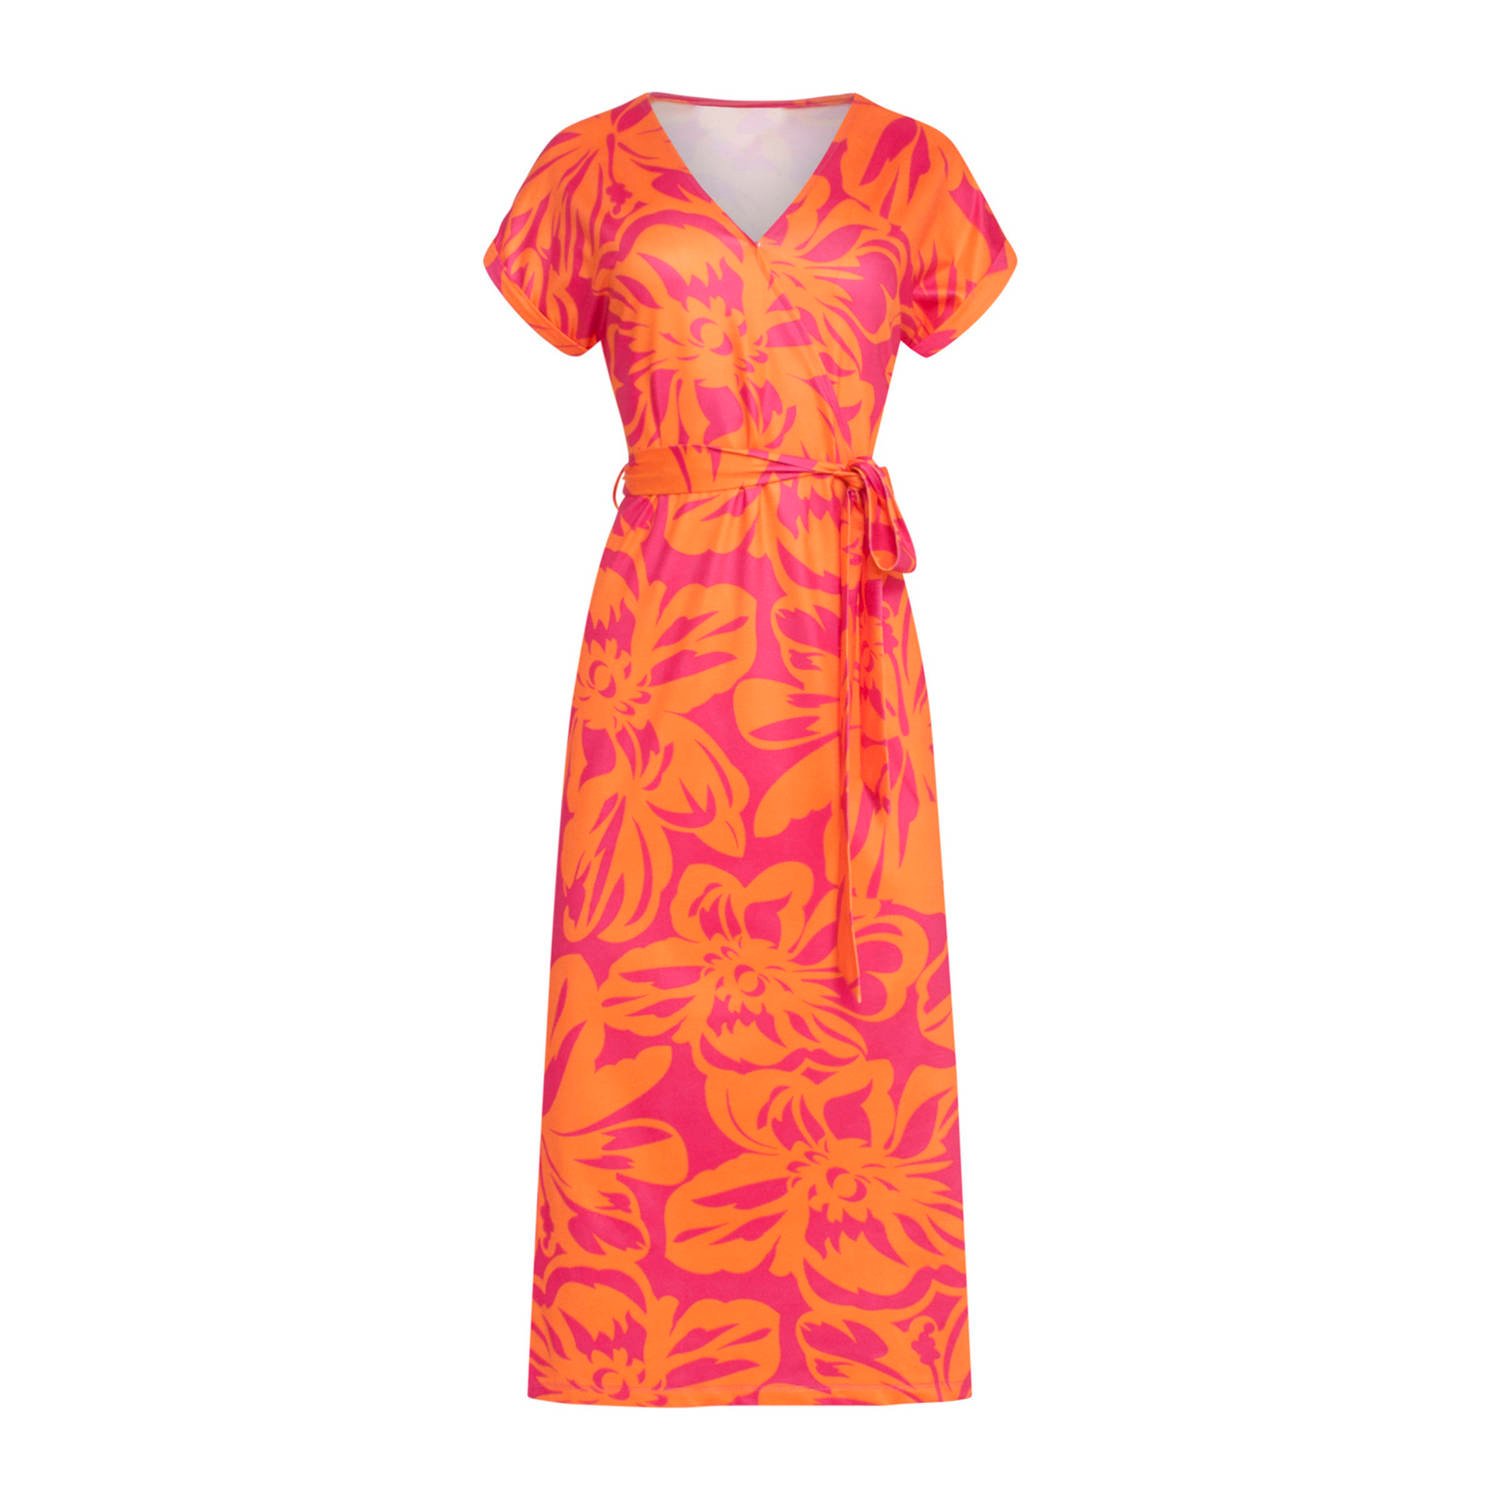 Smashed Lemon A-lijn jurk Marilyn met all over print en plooien roze oranje